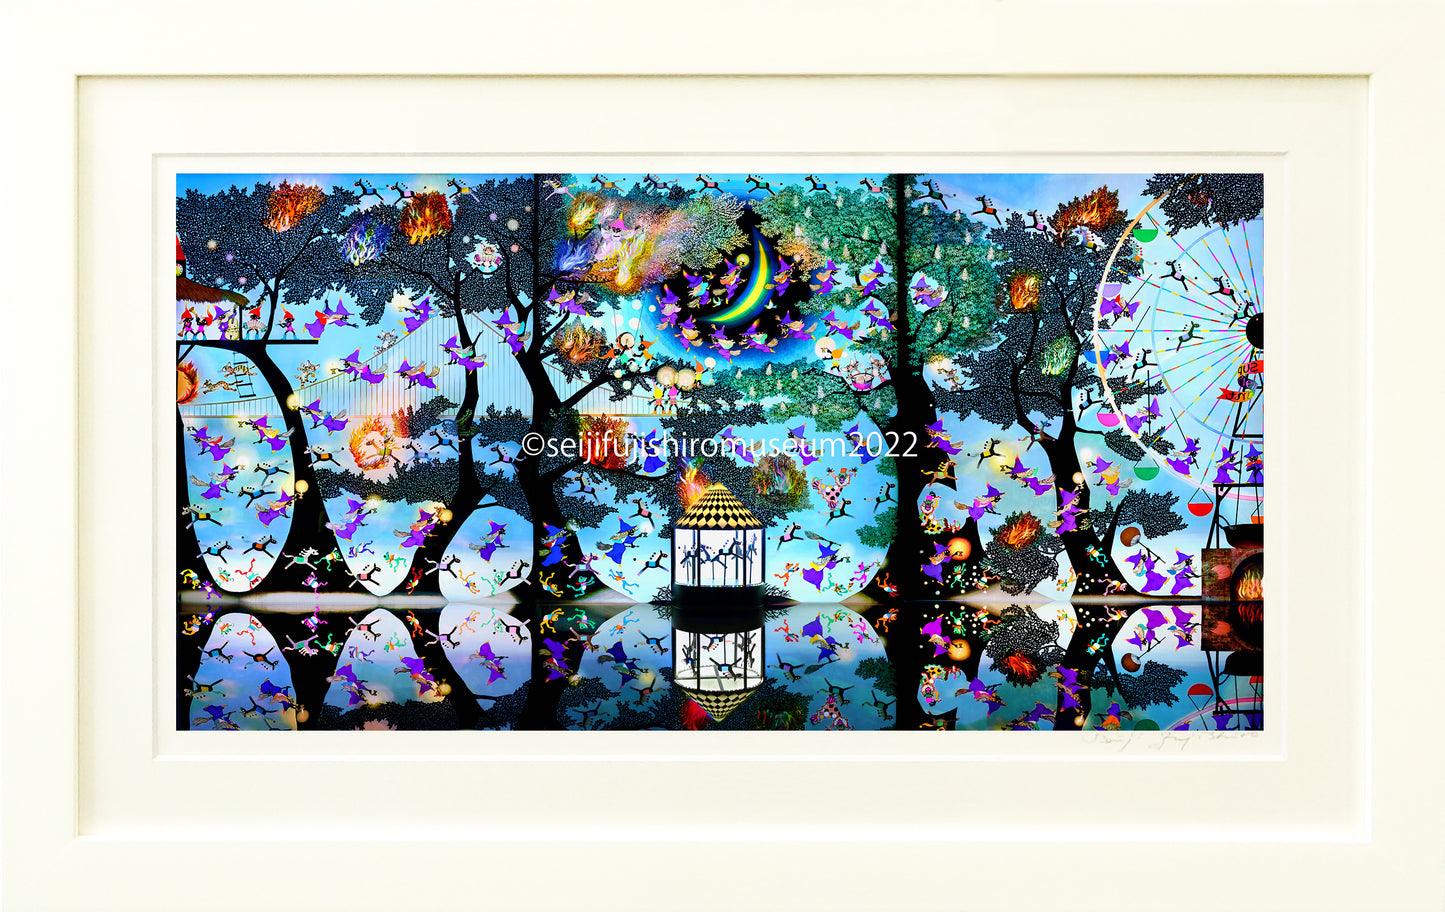 「魔法の森に燃える再生の炎」FSM-246-P/Y,42-P/Y ジクレー版画